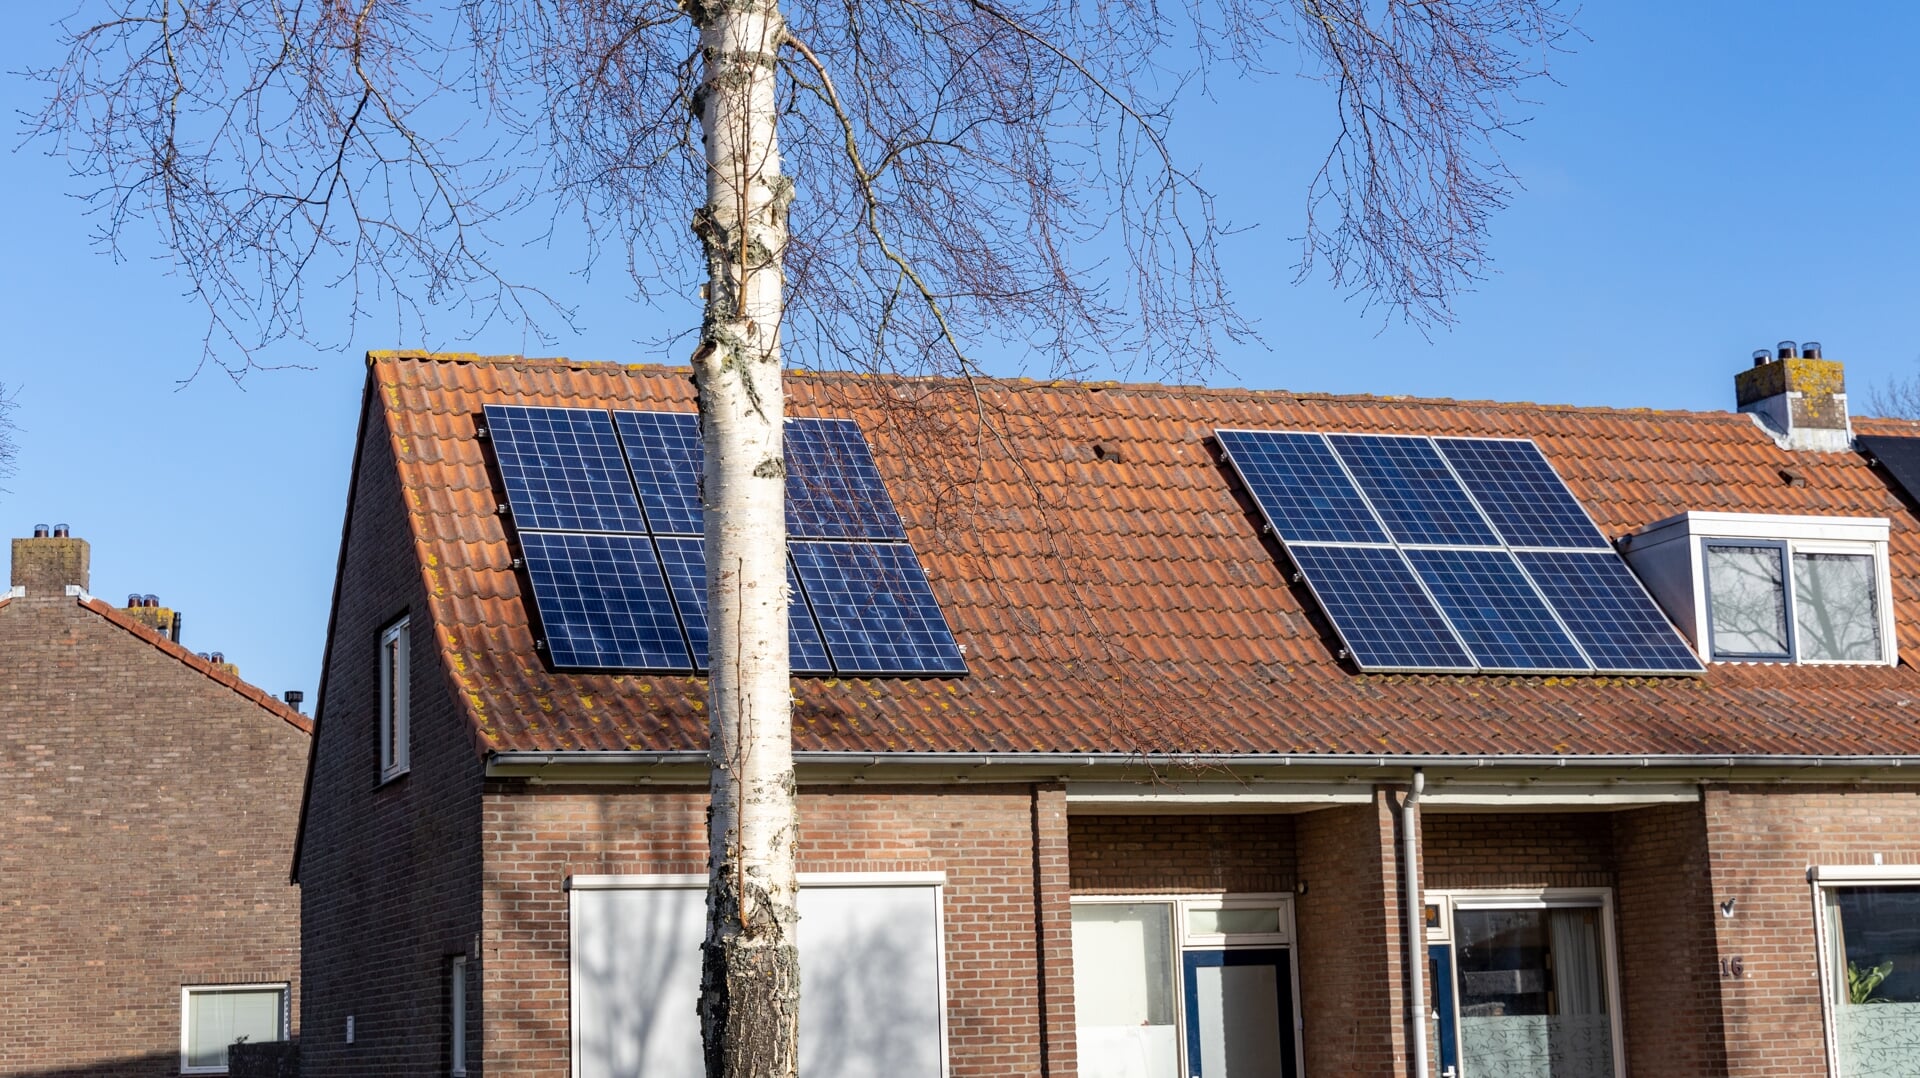 Zonnepanelen op het dak van woningen in Oude-Tonge. Pieter Omtzigt en Kamerleden van zowel GroenLinks als PvdA vrezen dat het in de toekomst voor particulieren niet meer aantrekkelijk is om zonnepanelen aan te schaffen. 